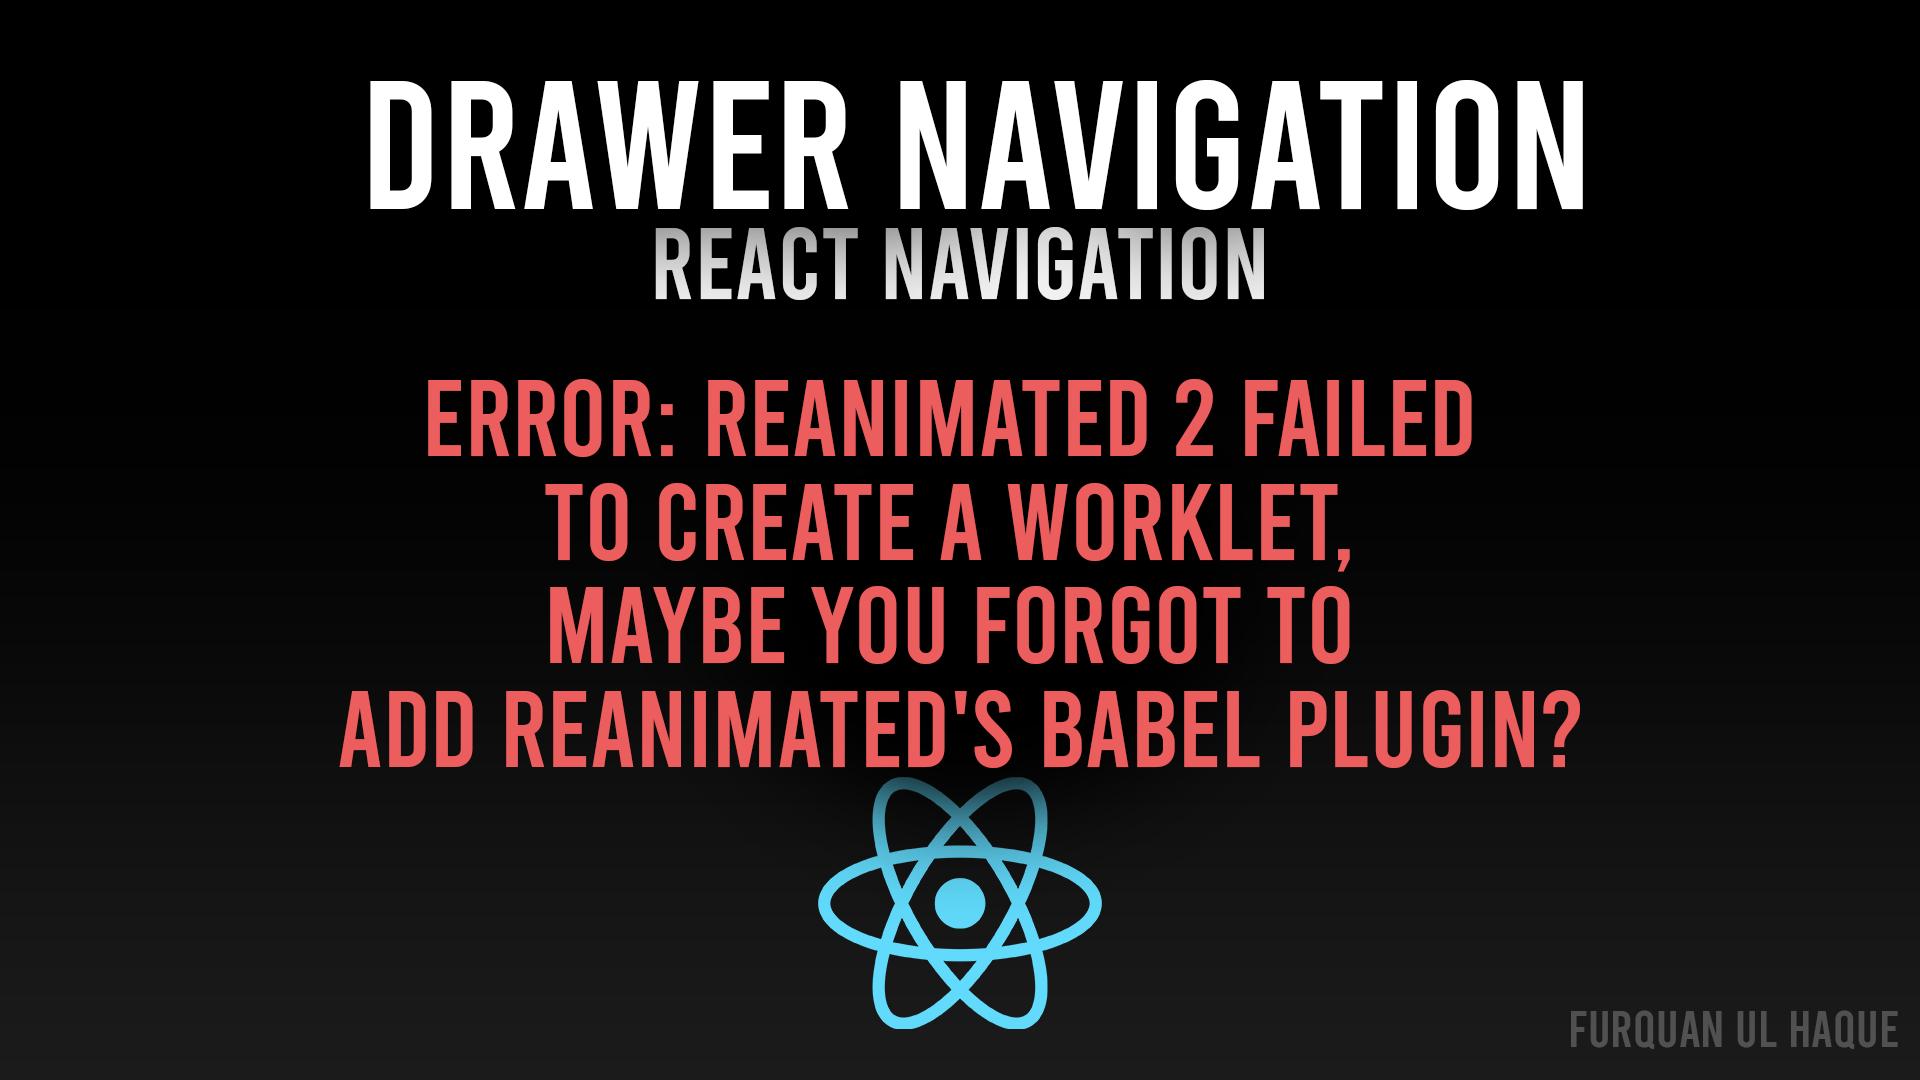 Drawer Navigation Error - Reanimated 2